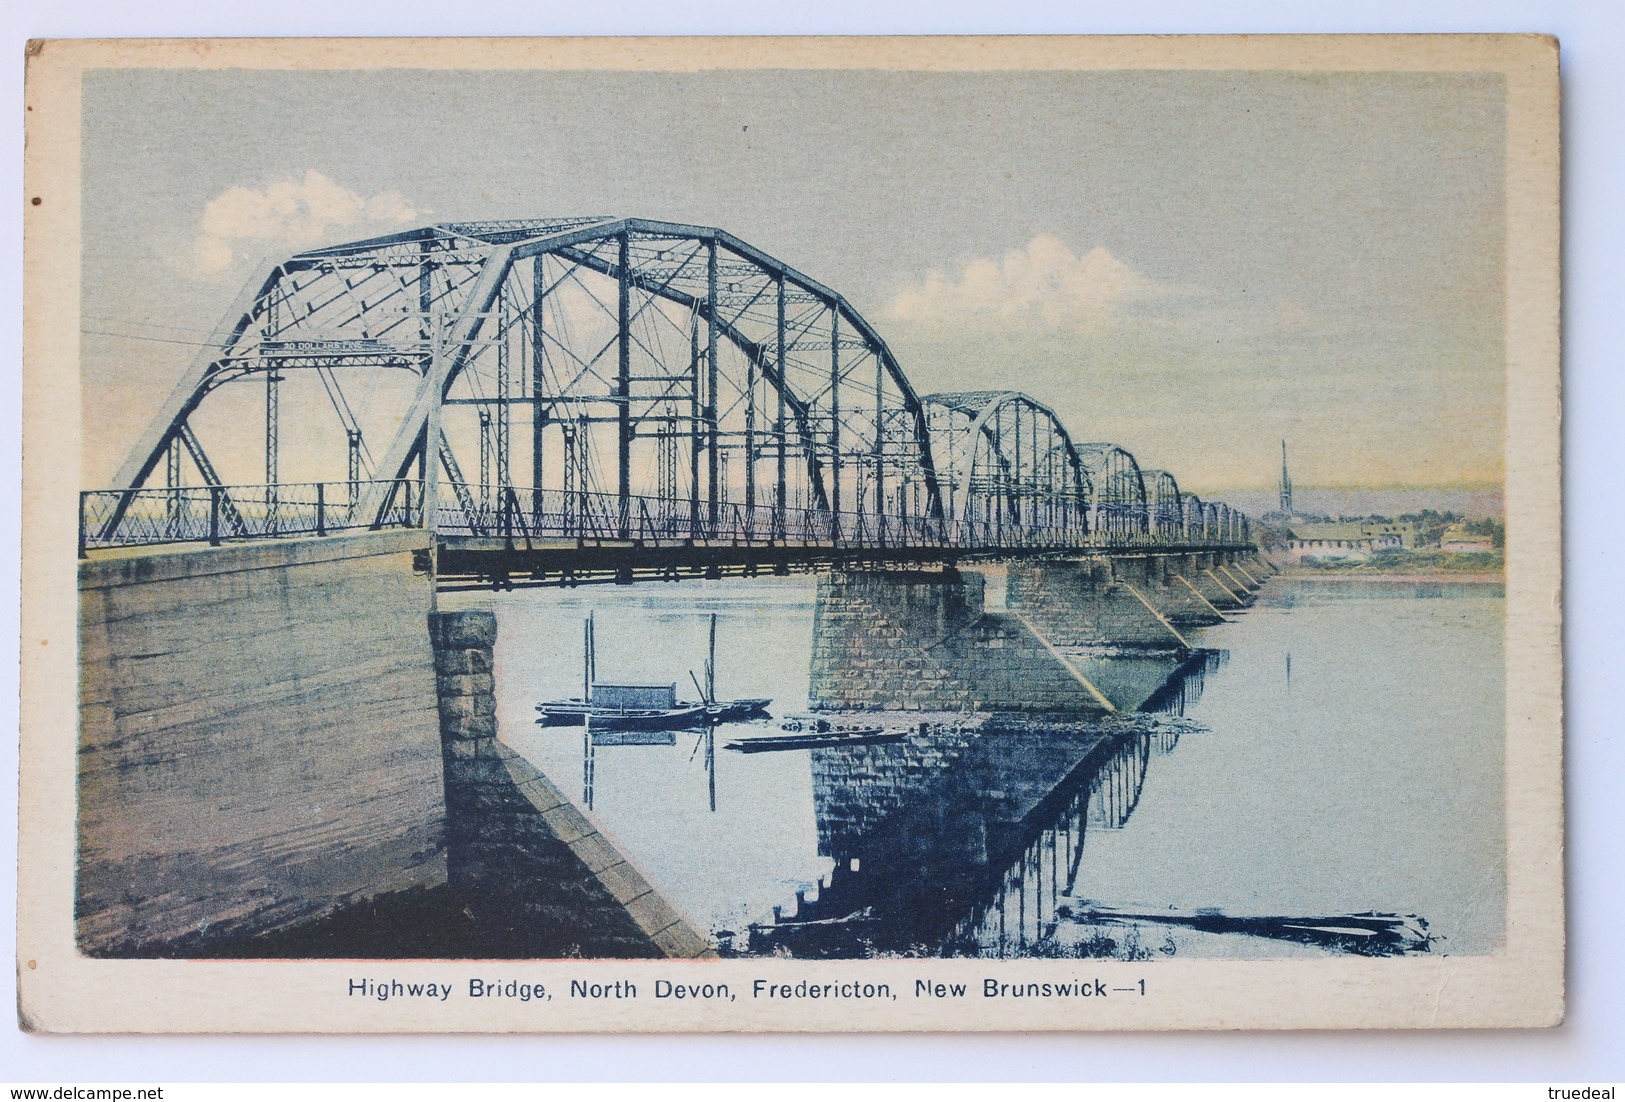 Highway Bridge, North Devon, Fredericton, New Brunswick, Canada - Fredericton